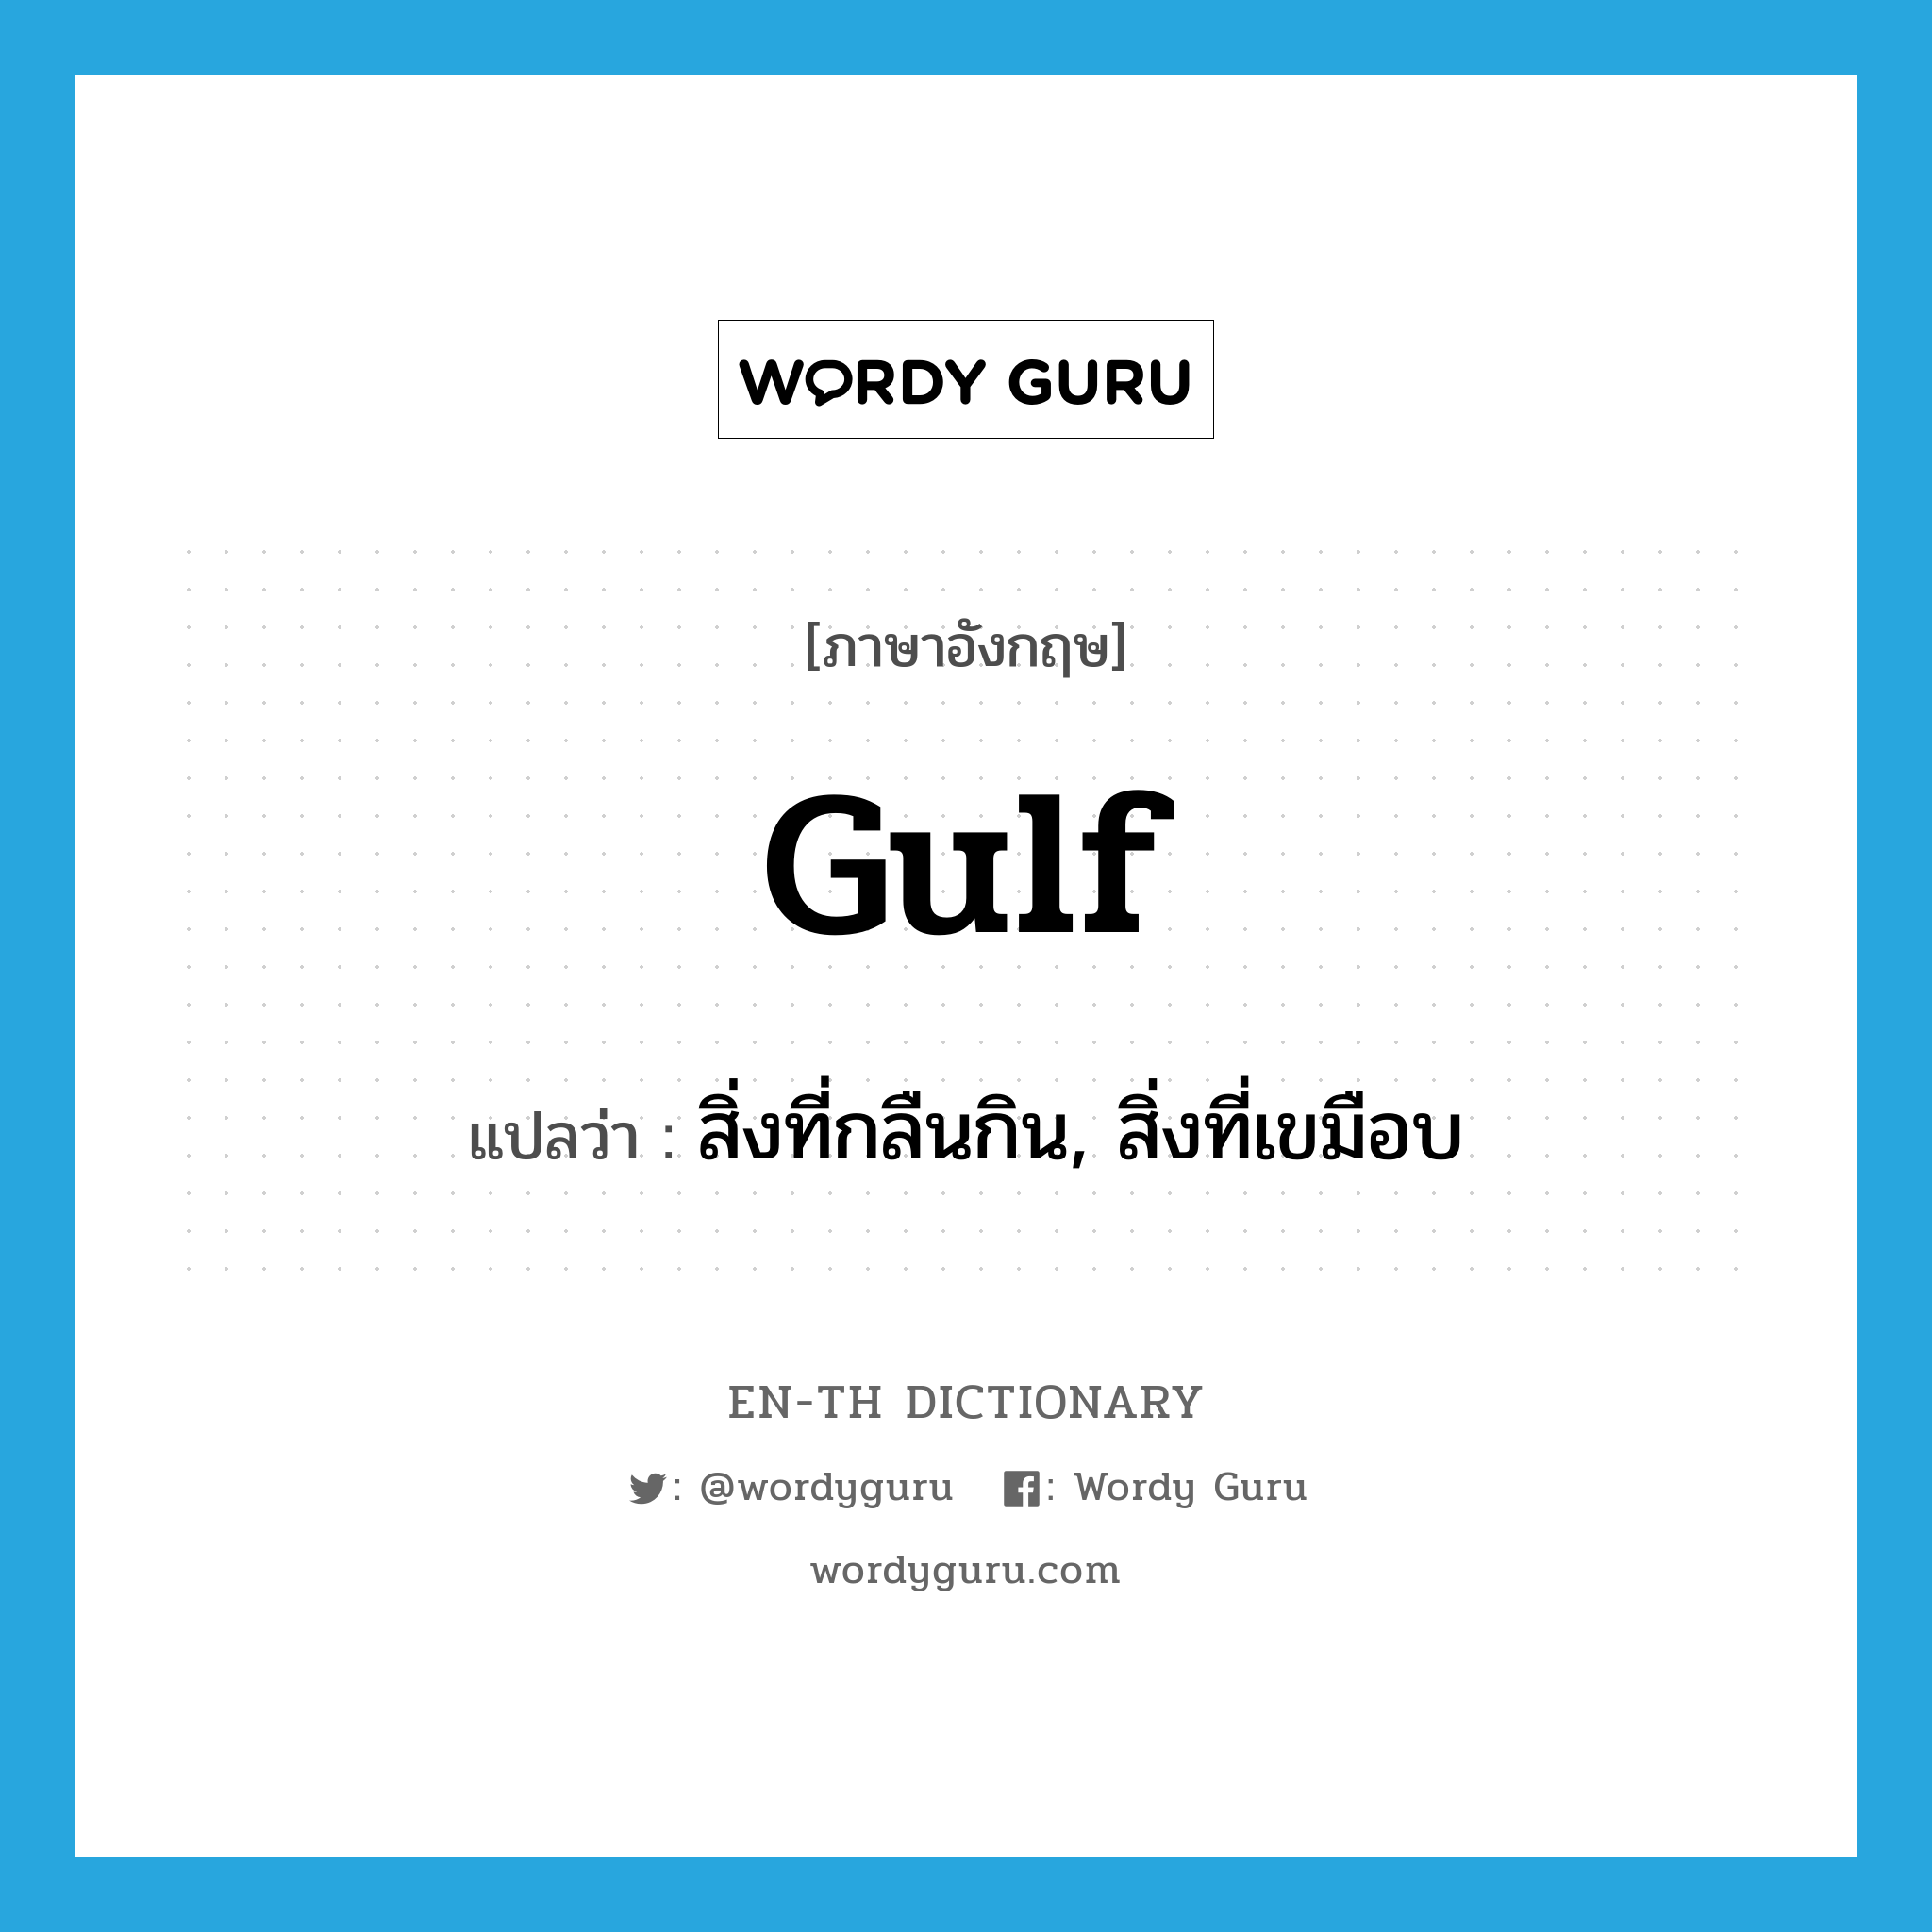 gulf แปลว่า?, คำศัพท์ภาษาอังกฤษ gulf แปลว่า สิ่งที่กลืนกิน, สิ่งที่เขมือบ ประเภท N หมวด N